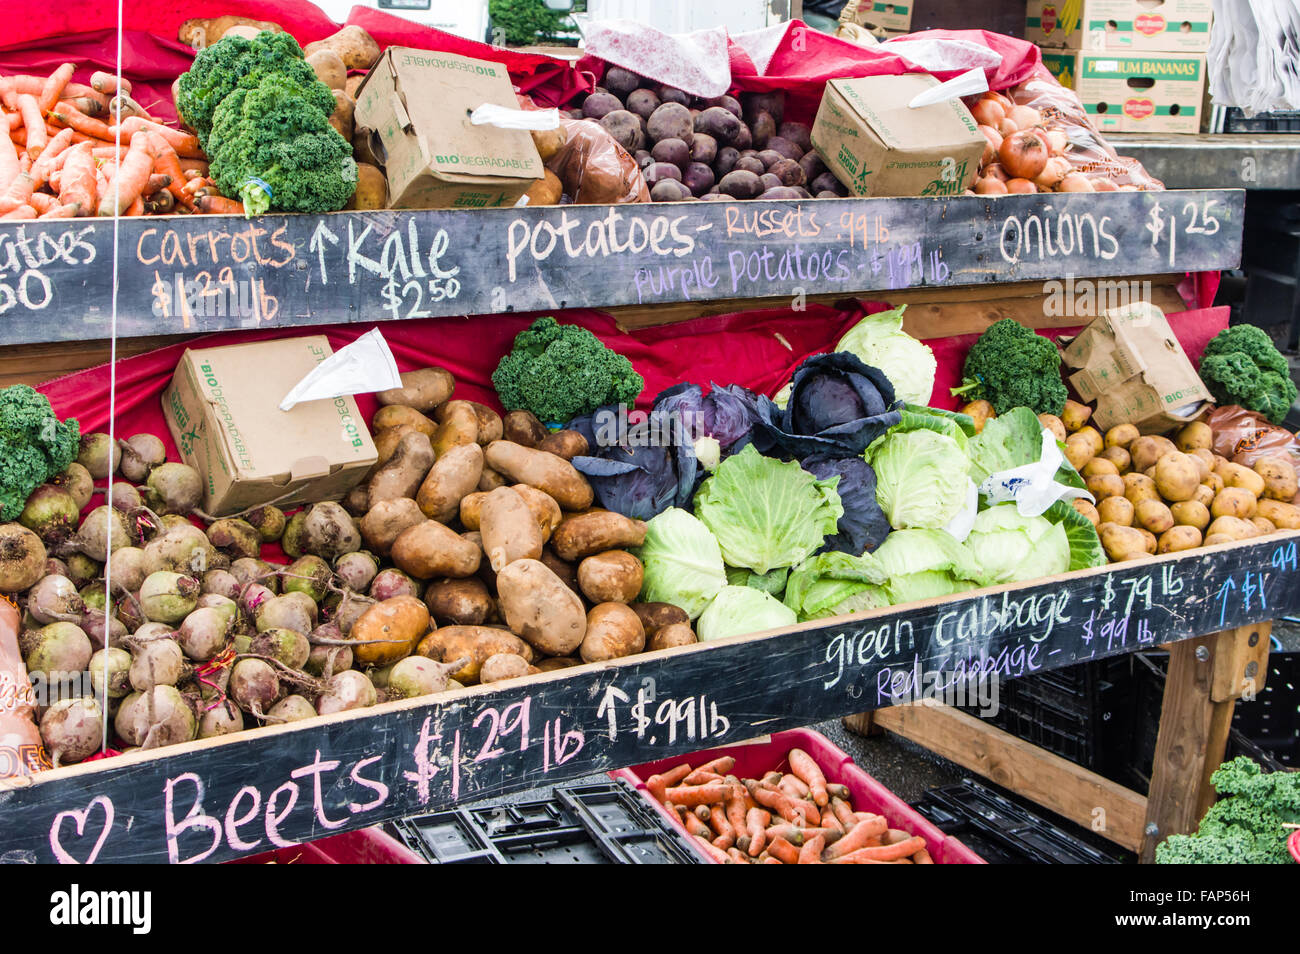 Markt-Anzeige von frischen Produkten wie Kartoffeln, Rüben und Karotten auf dem Bauernmarkt, Beaverton, Oregon, USA Stockfoto